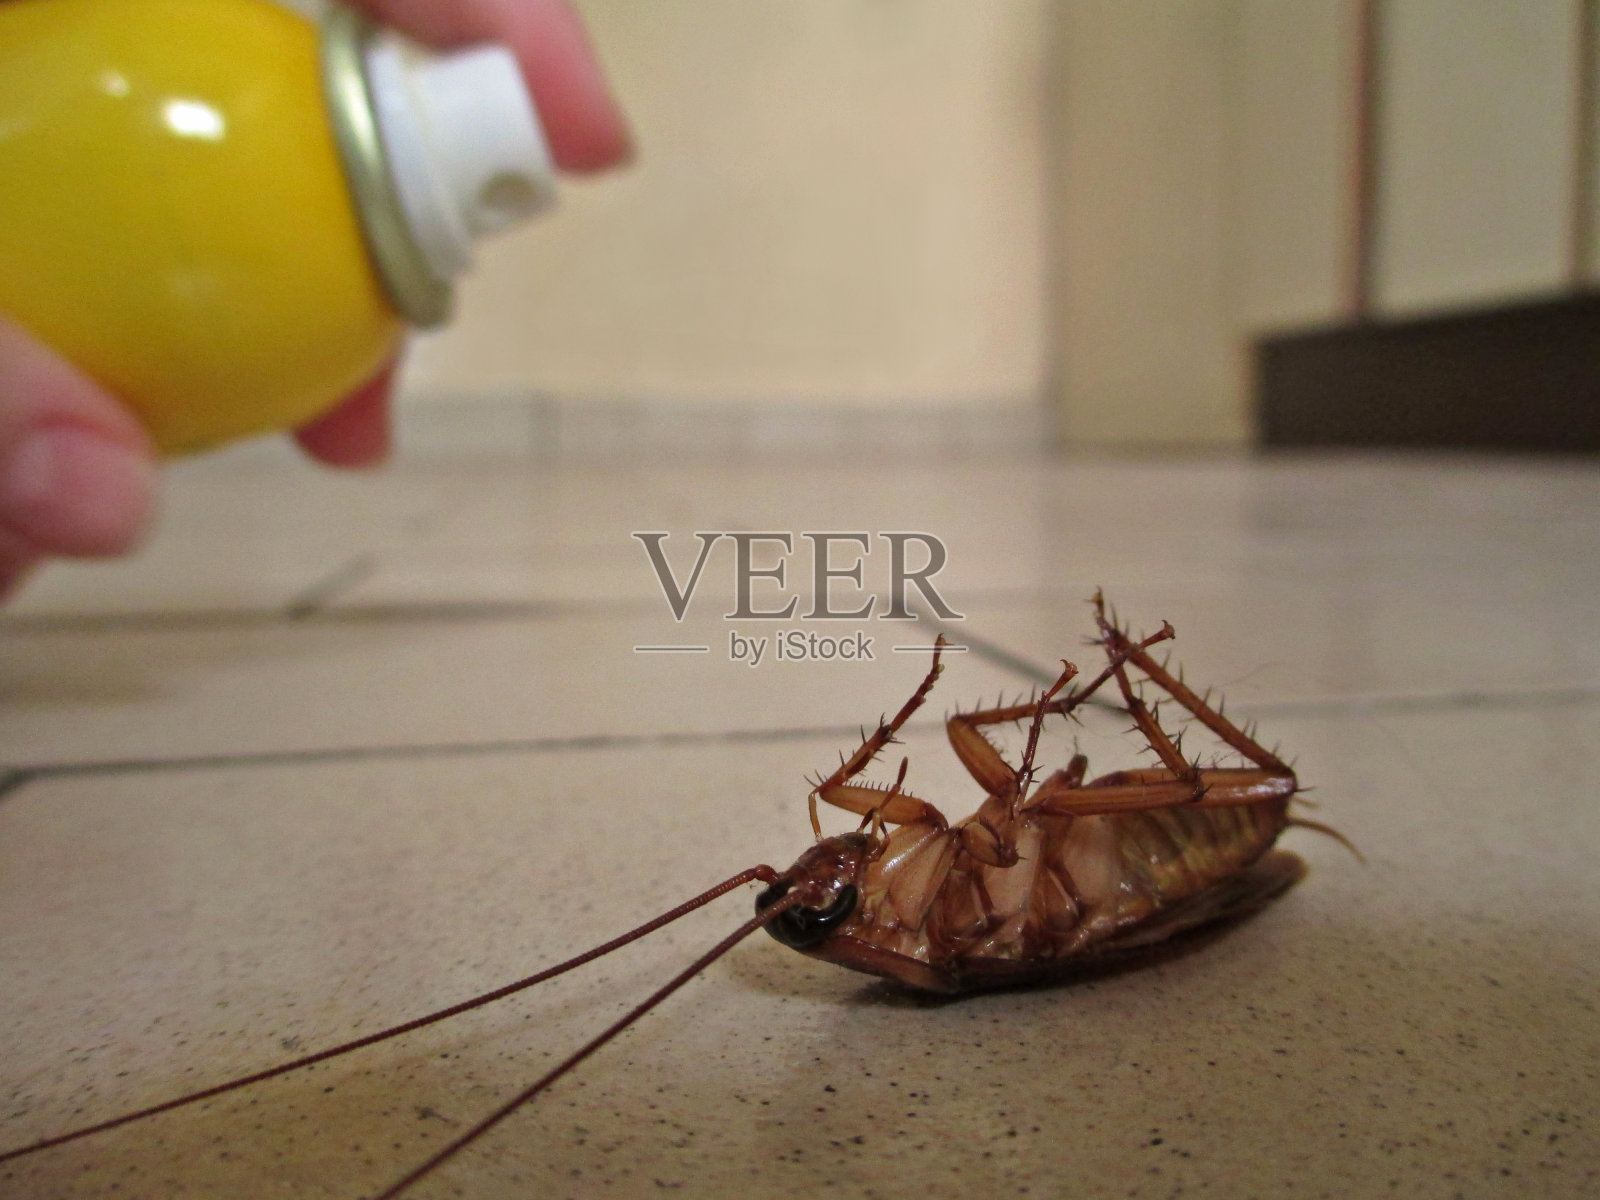 喷洒一只蟑螂照片摄影图片